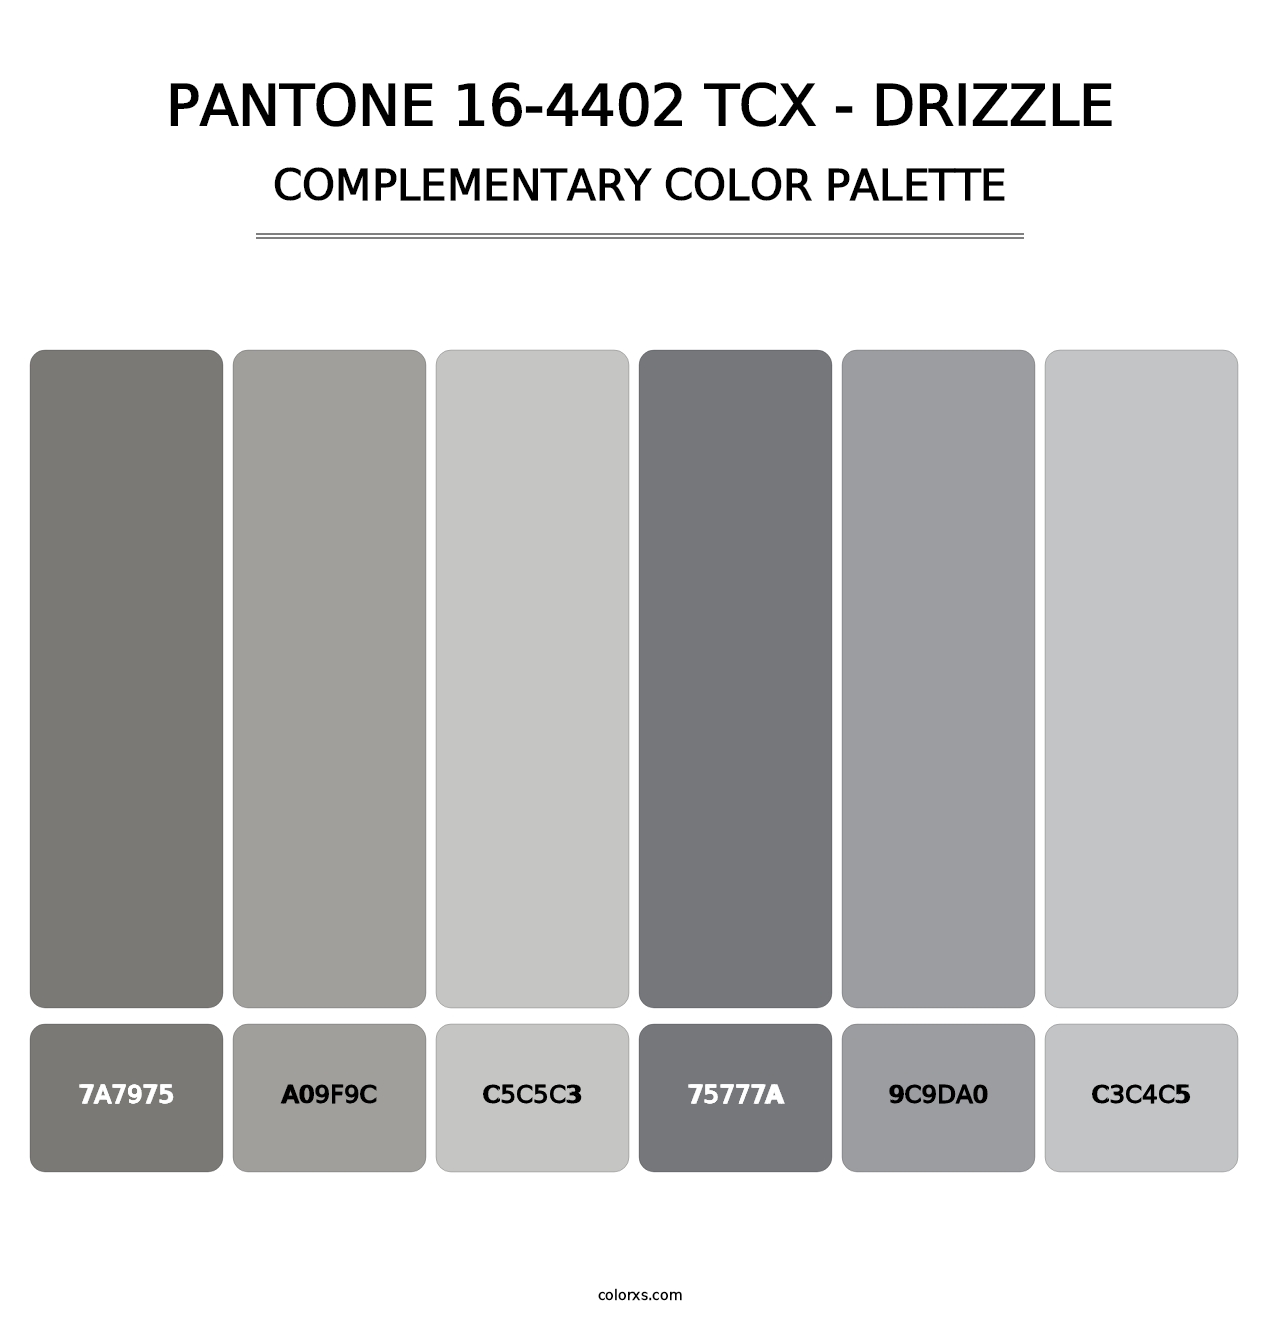 PANTONE 16-4402 TCX - Drizzle - Complementary Color Palette